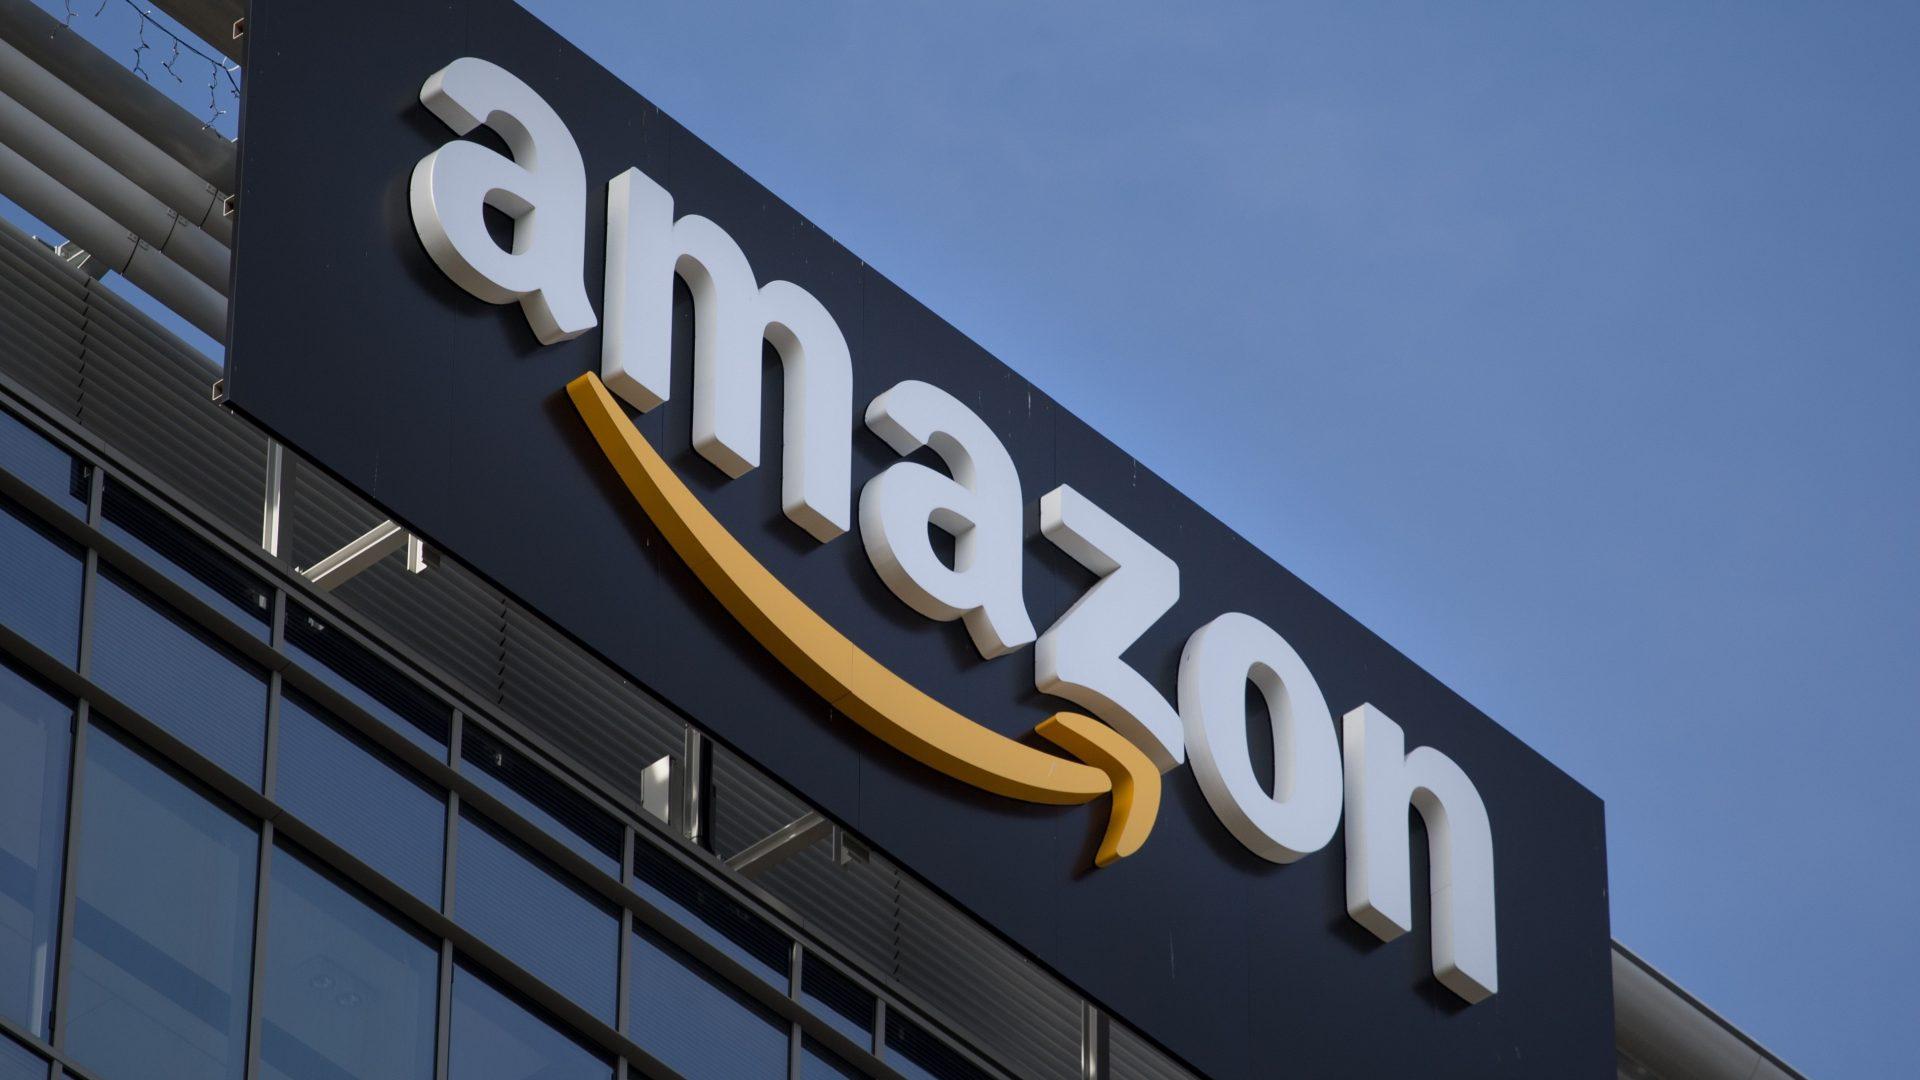 Reportagem mostra que Amazon descarta milhões de produtos ao ano, atraindo críticas